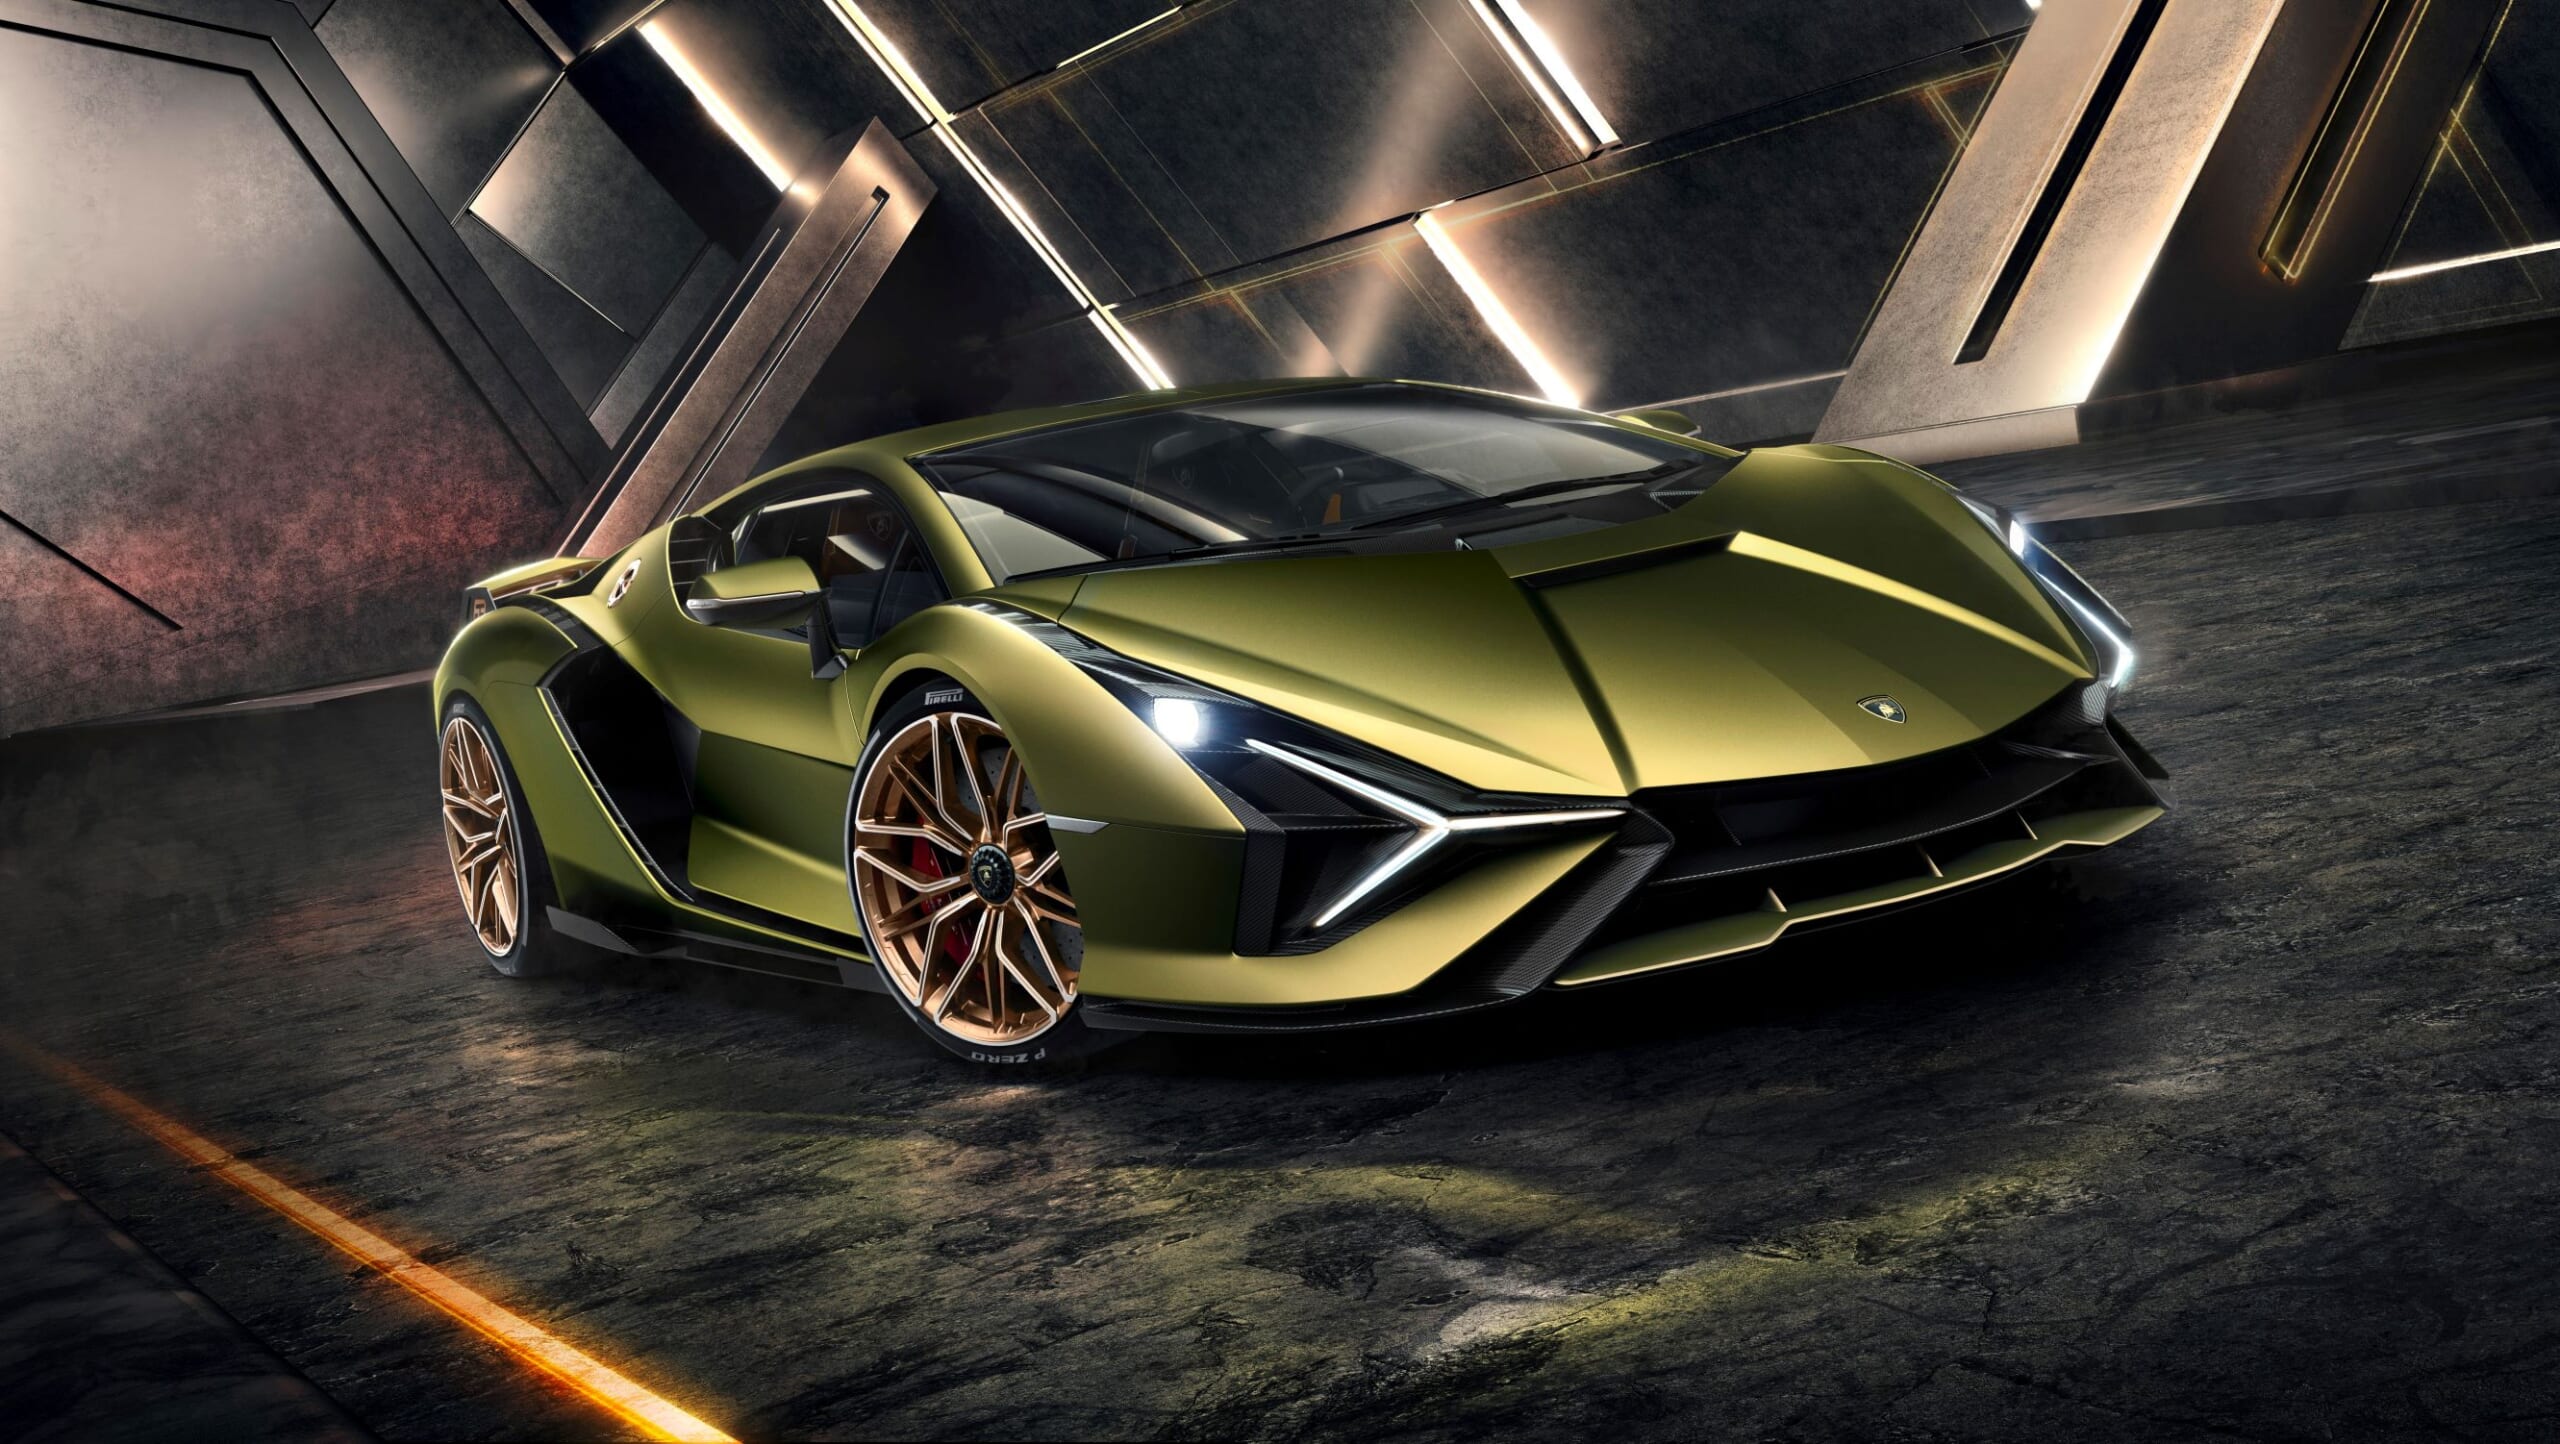 Lamborghini Sian: The New Raging Bull In Detailed Images